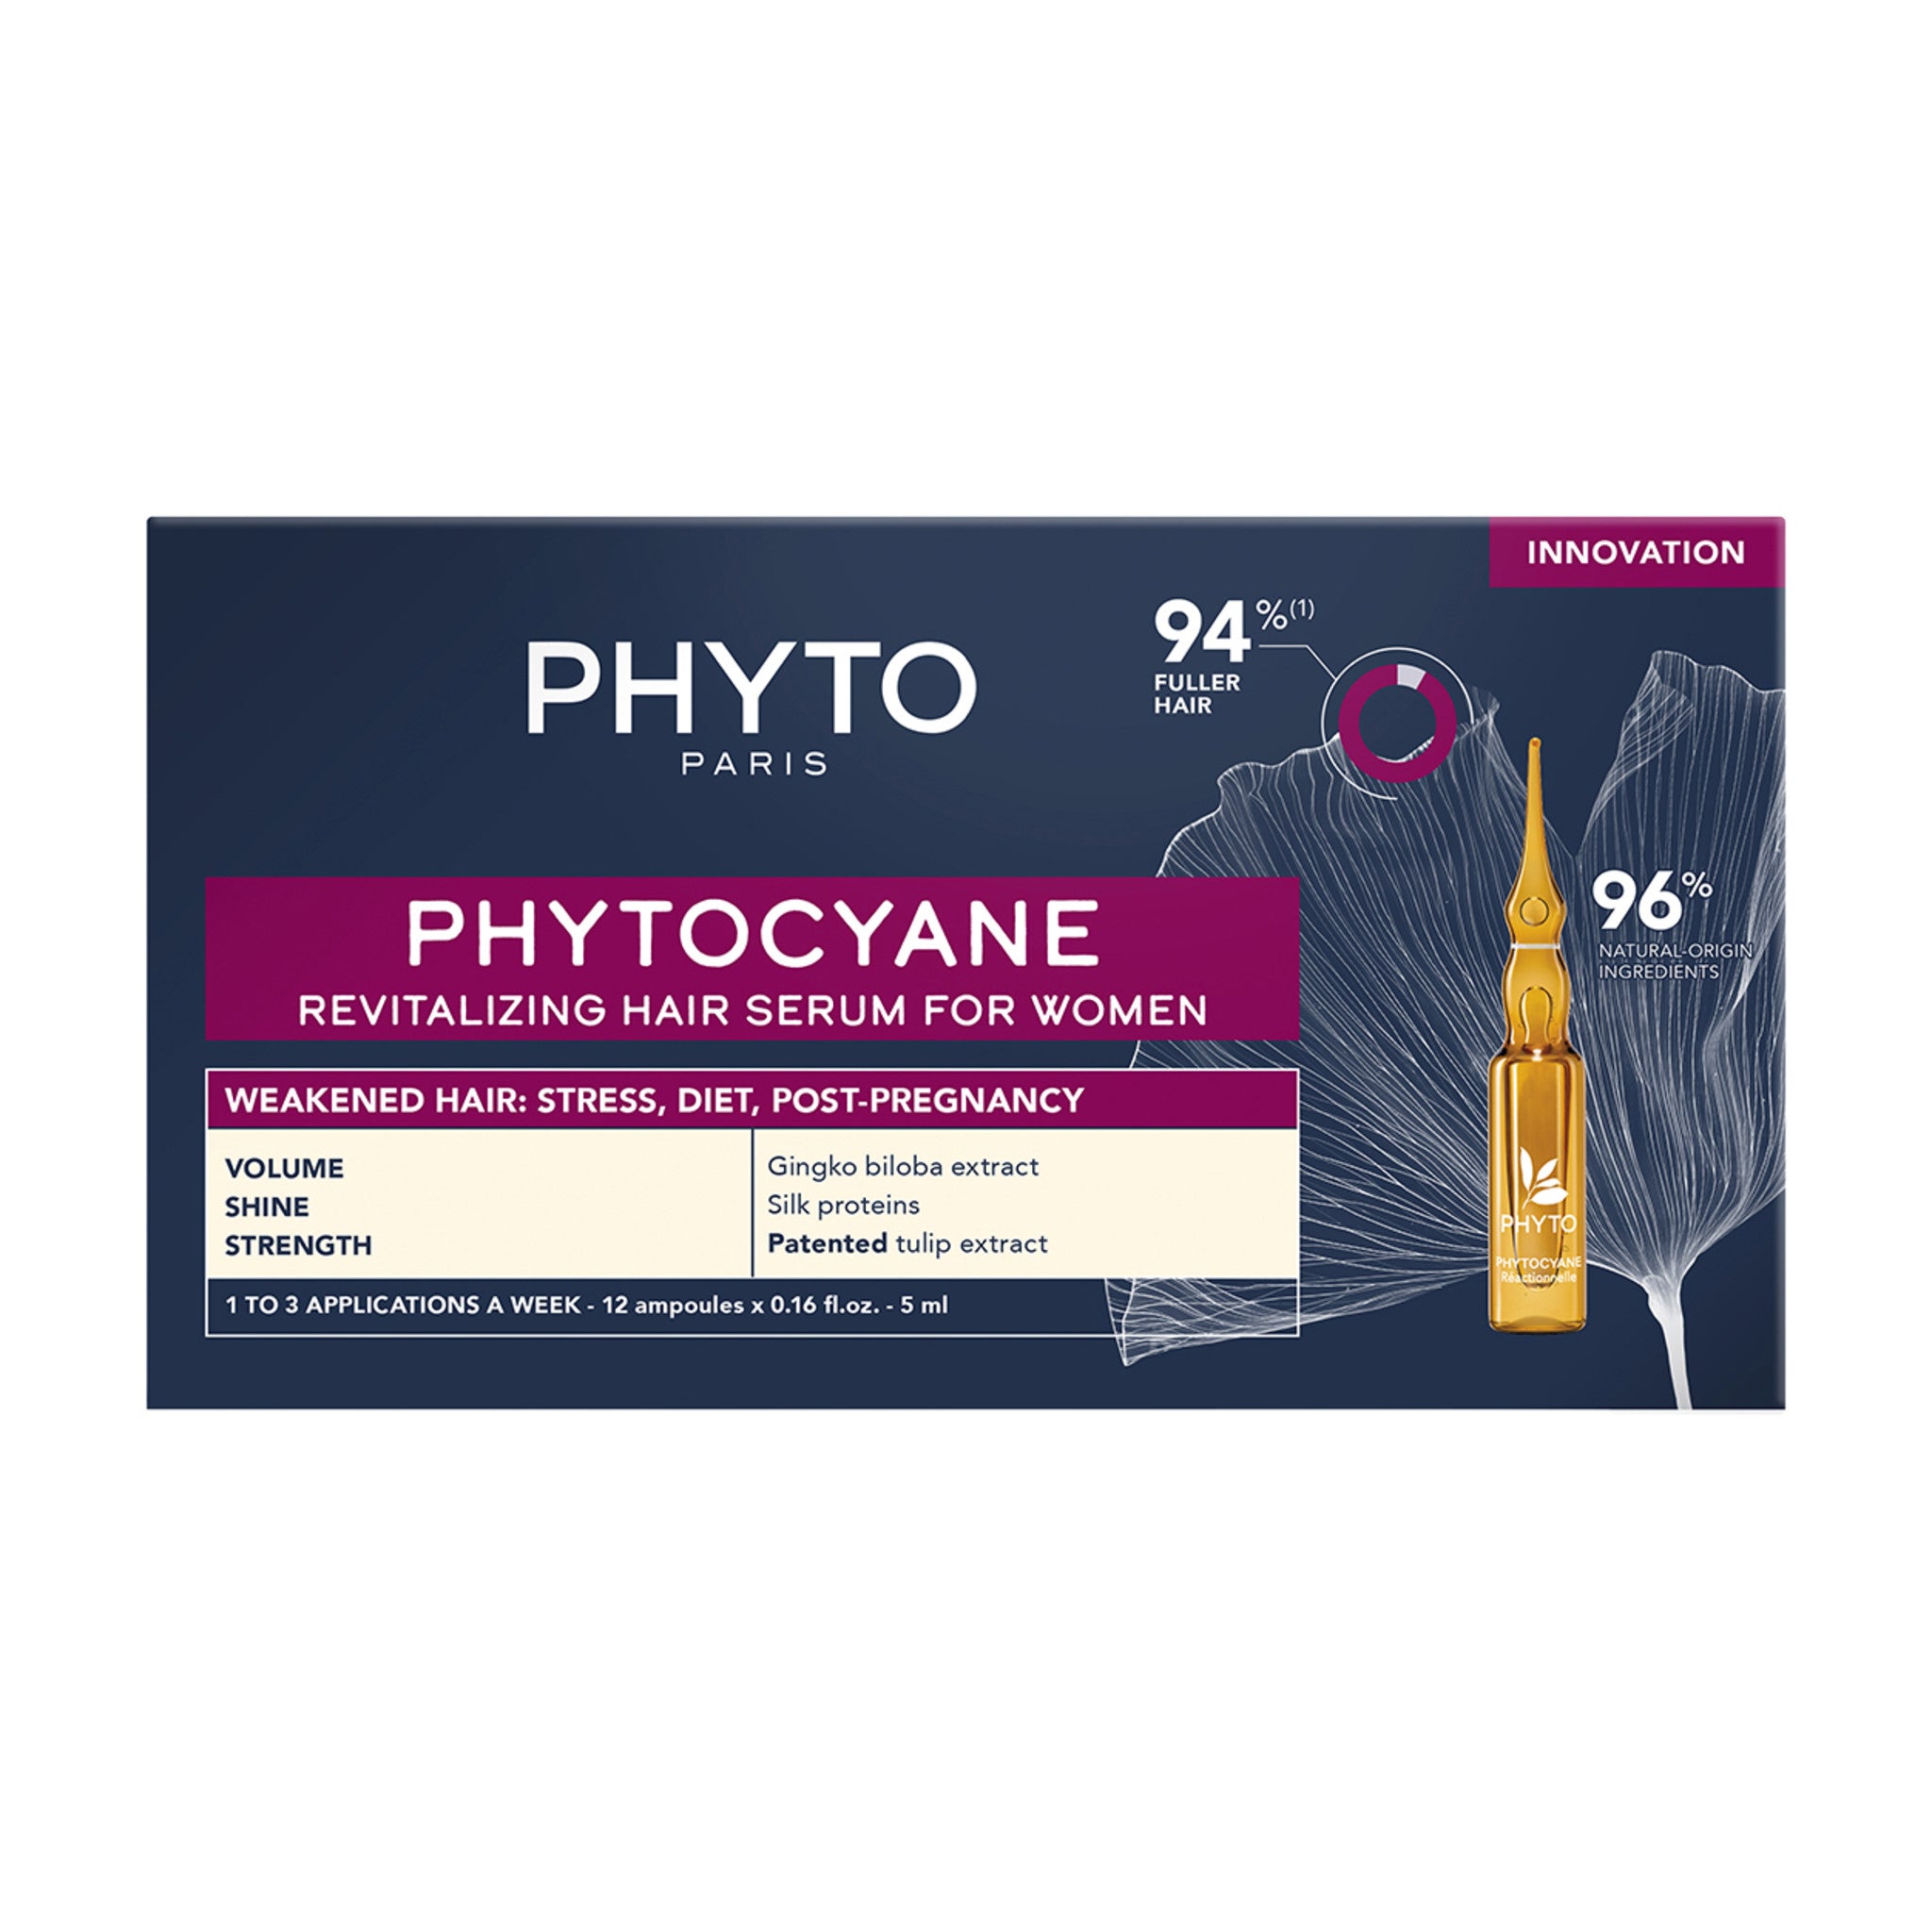 Phyto Phytocyane Revitalizing Hair Serum main image.